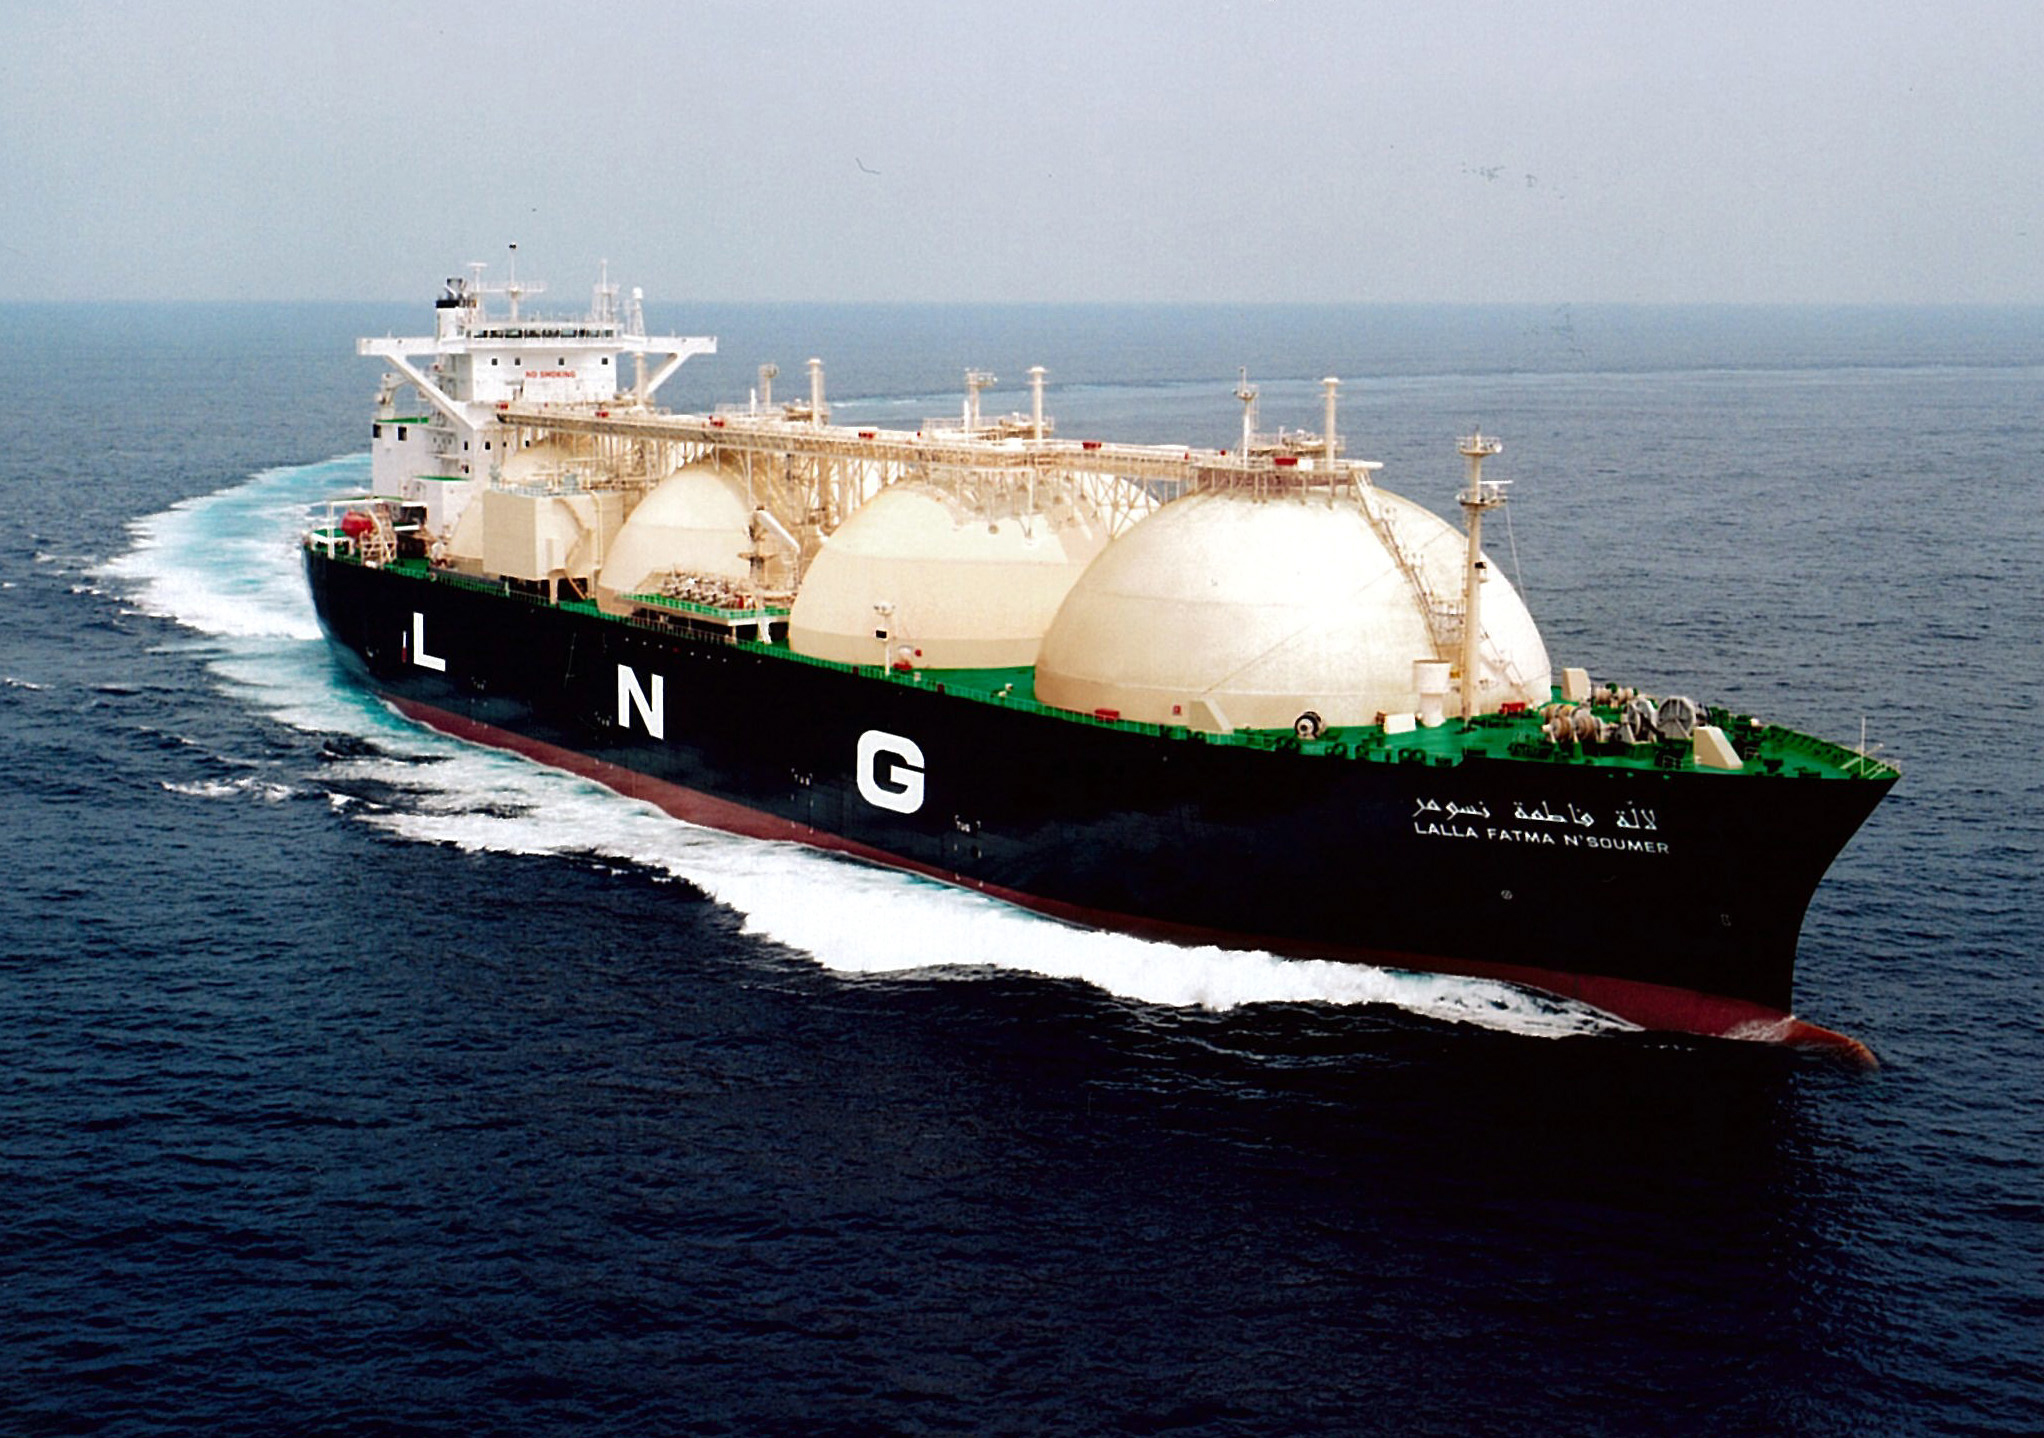 США нанесли очередной удар по РФ, начав экспансию газового рынка: первый танкер с топливом отправился в Европу